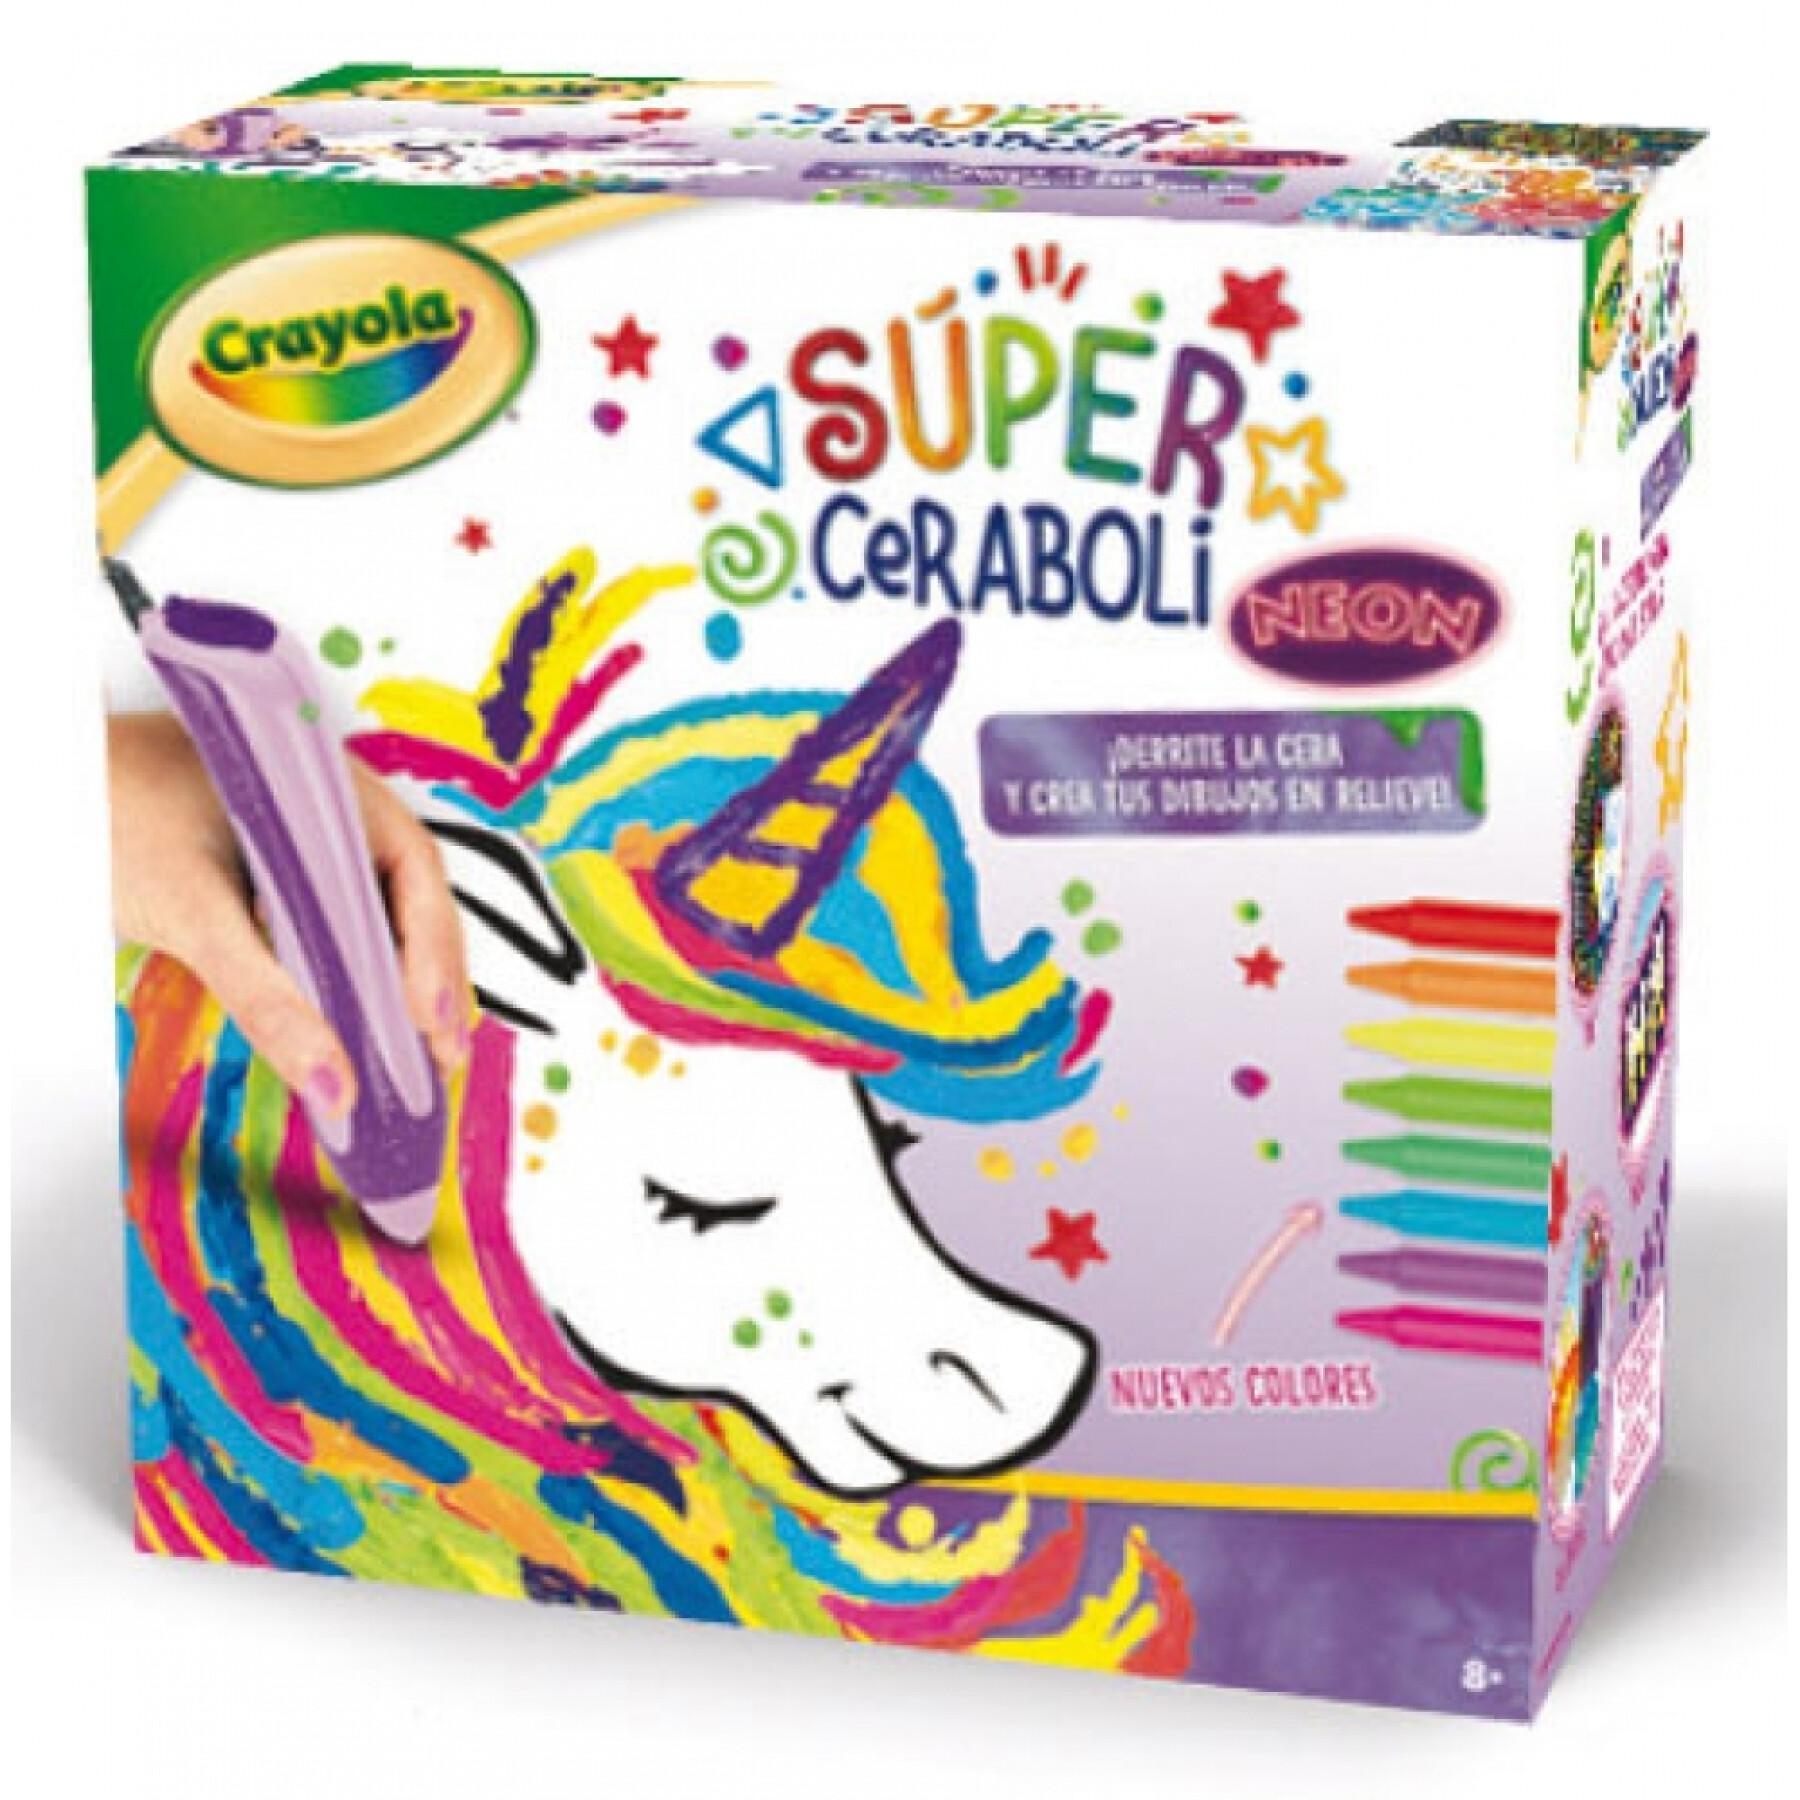 Kolorowanie Crayola Super Ceraboli Néon